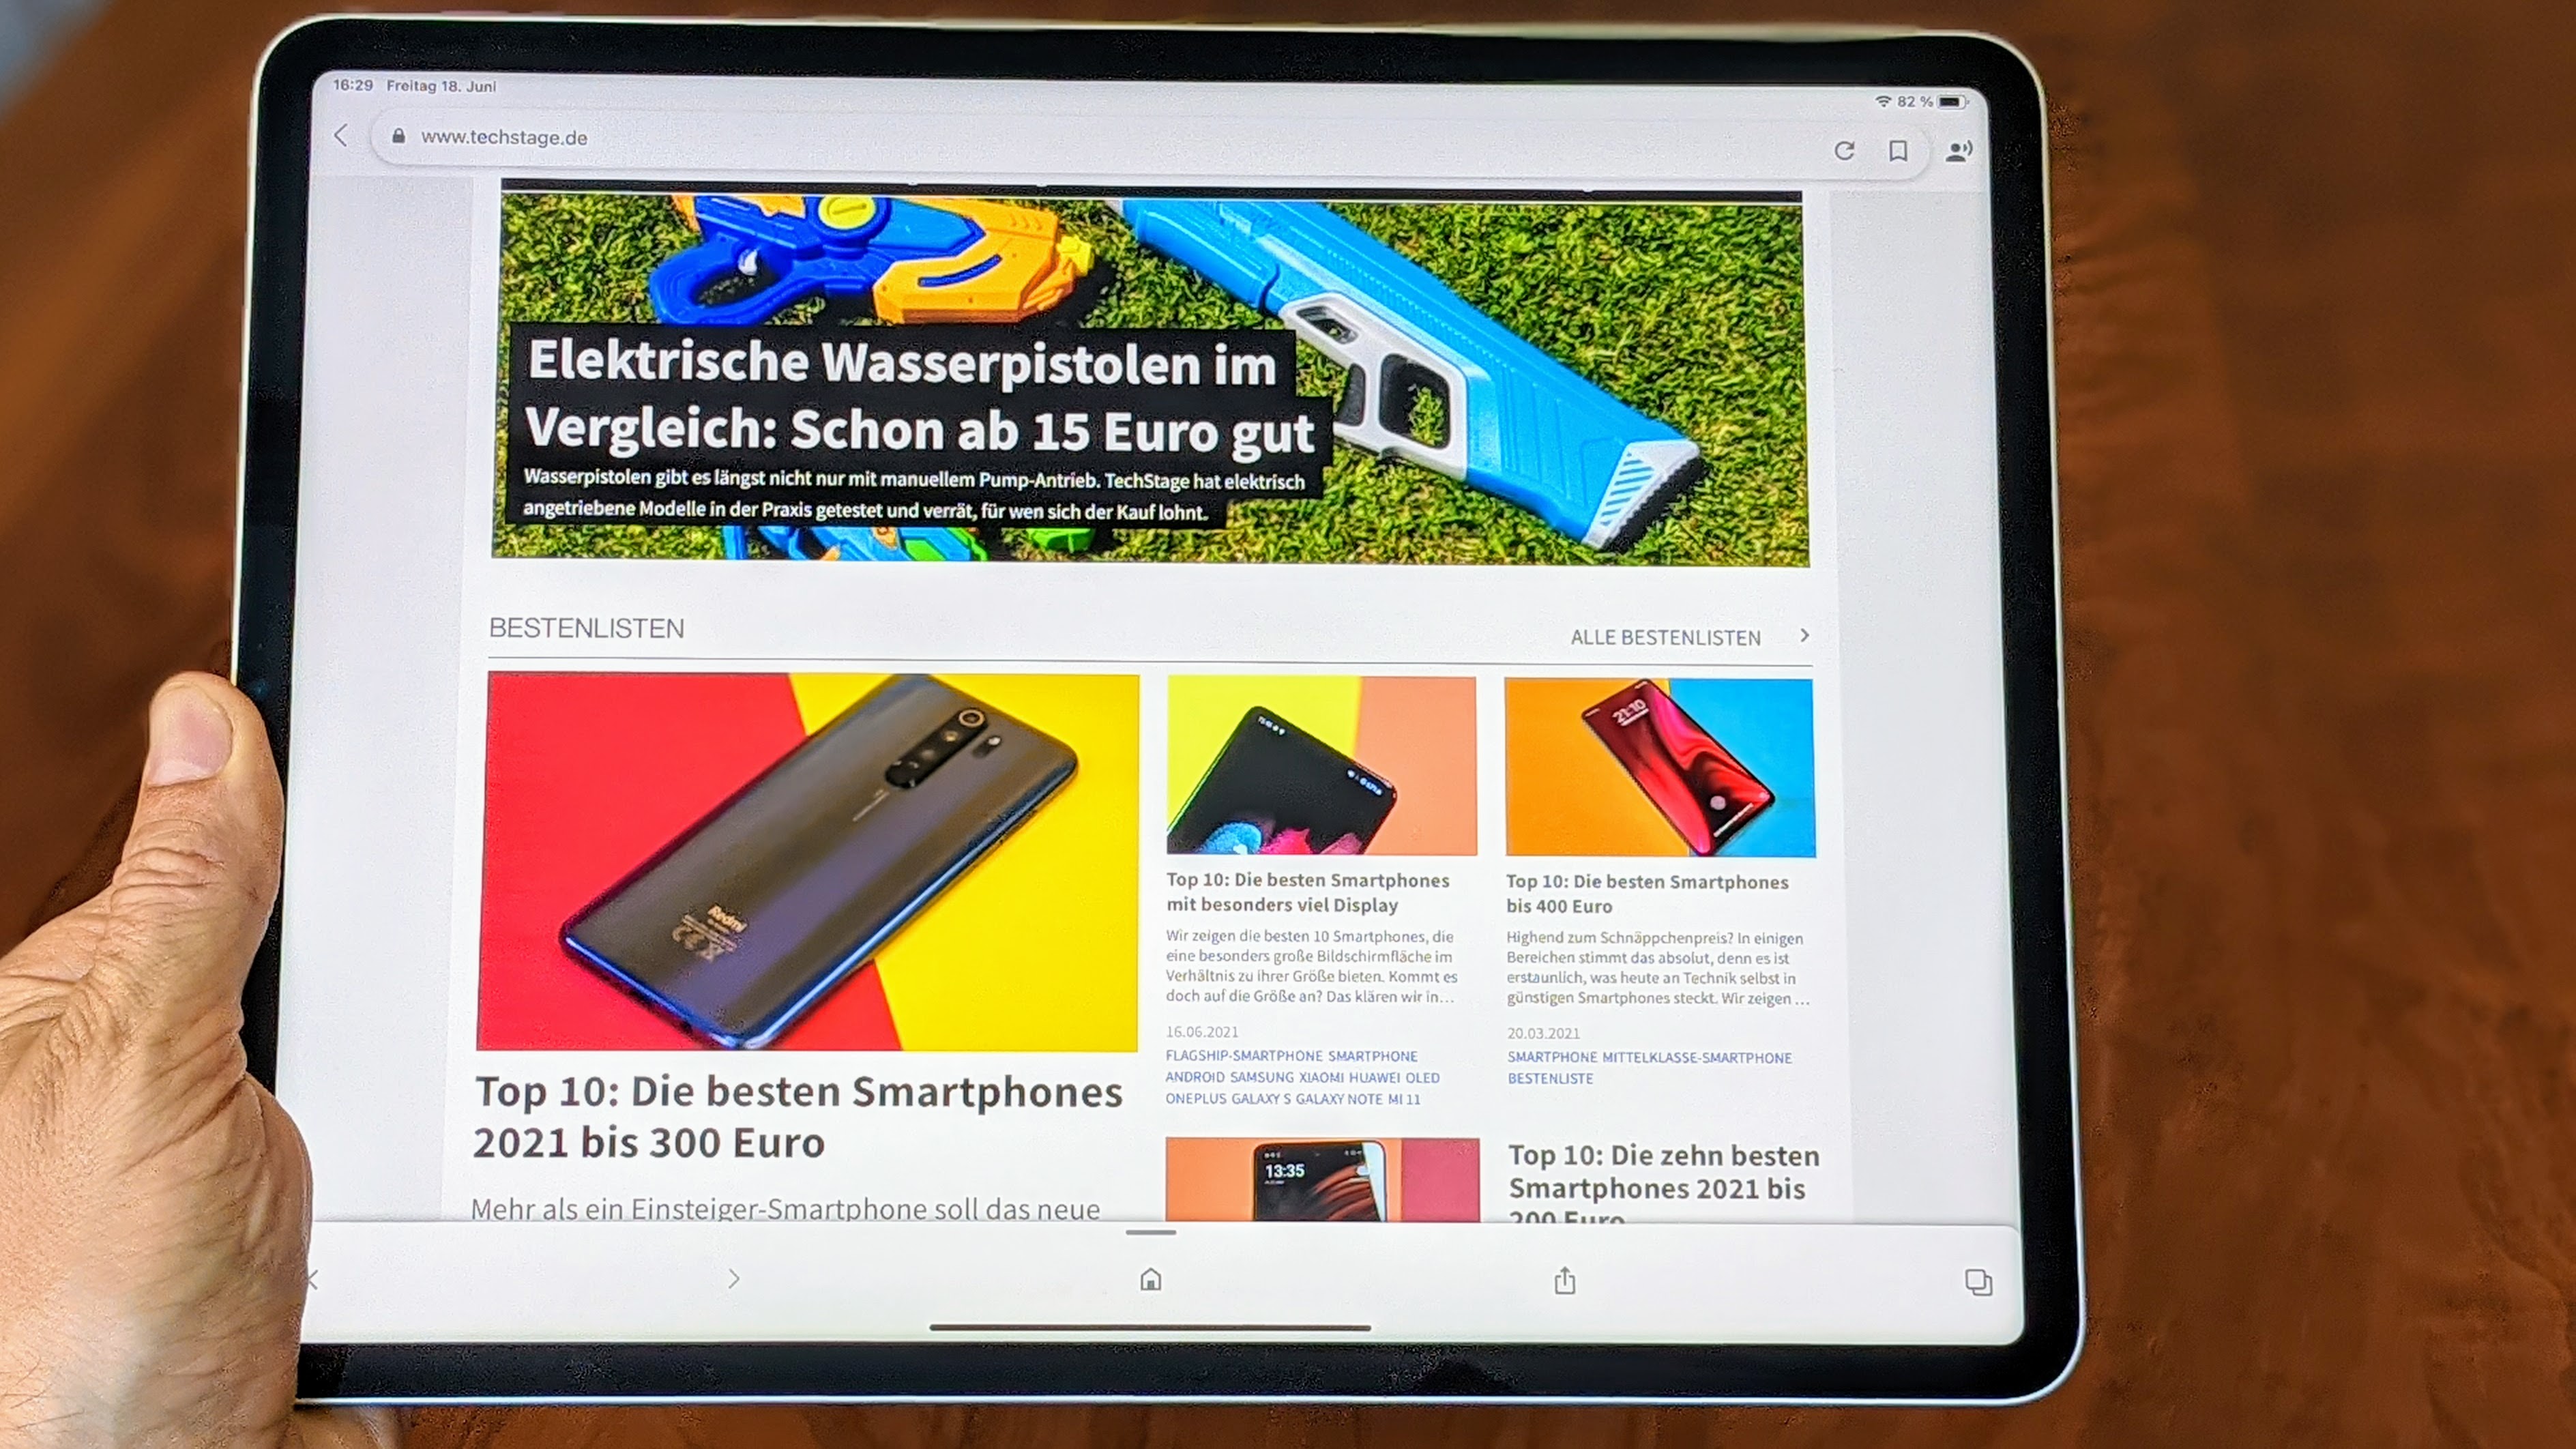 iPad Pro 12.9 im Test: Apple zündet mit M1-Chip den Tablet-Turbo | TechStage